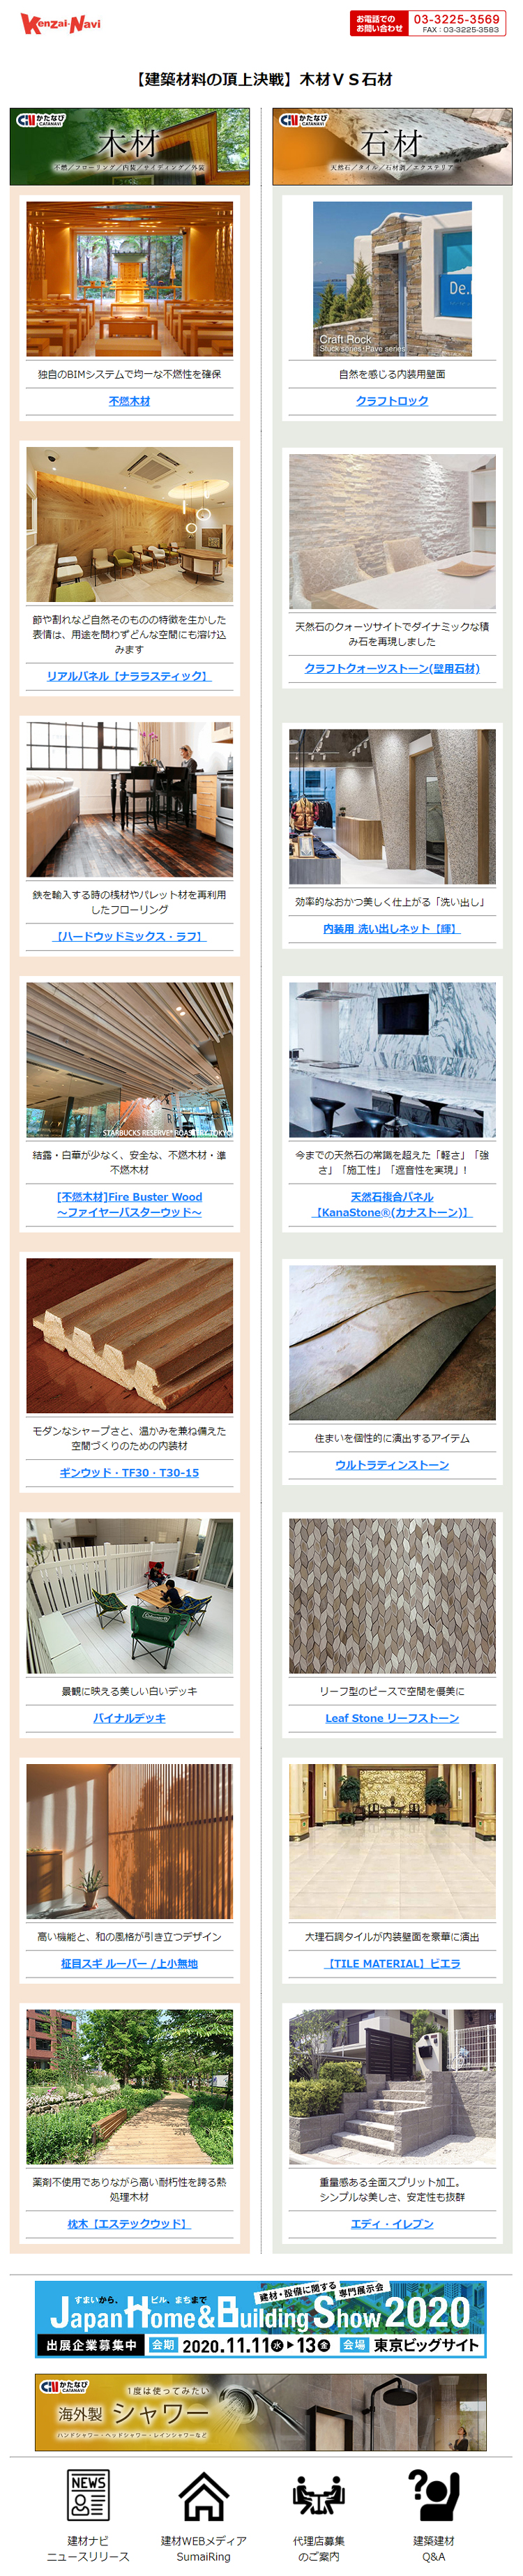 建材ナビは800社を超えるメーカーの製品を200以上のカテゴリーに分類した建築材料専門の検索サイトです。